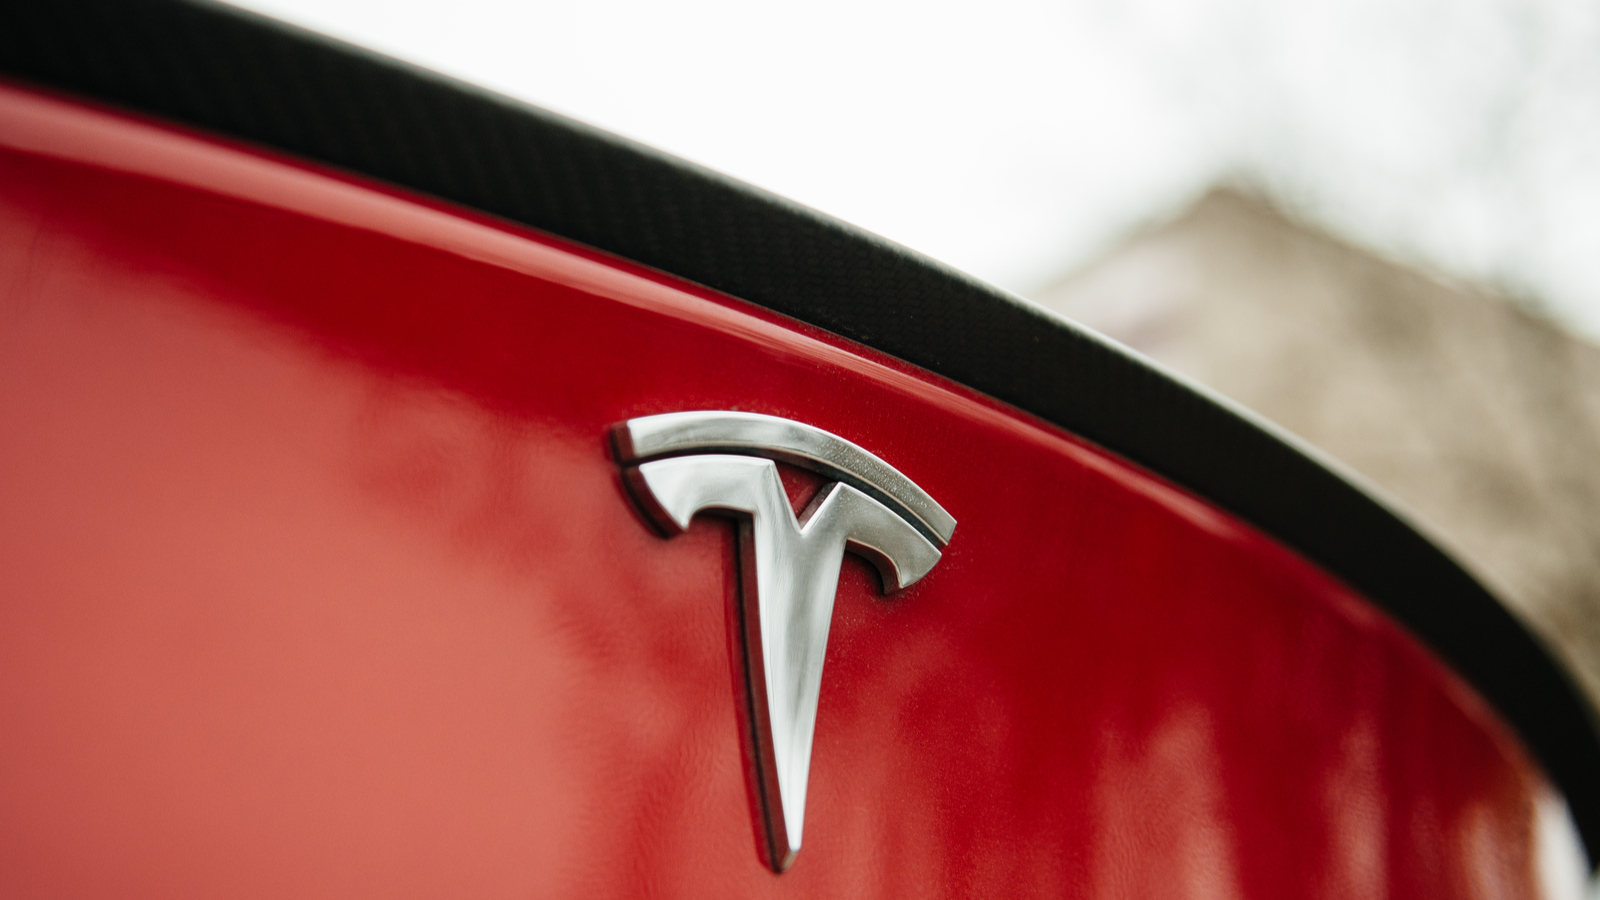 Malgré la fermeture de son usine de Fremont, Tesla pourrait être rentable au Q2 2020